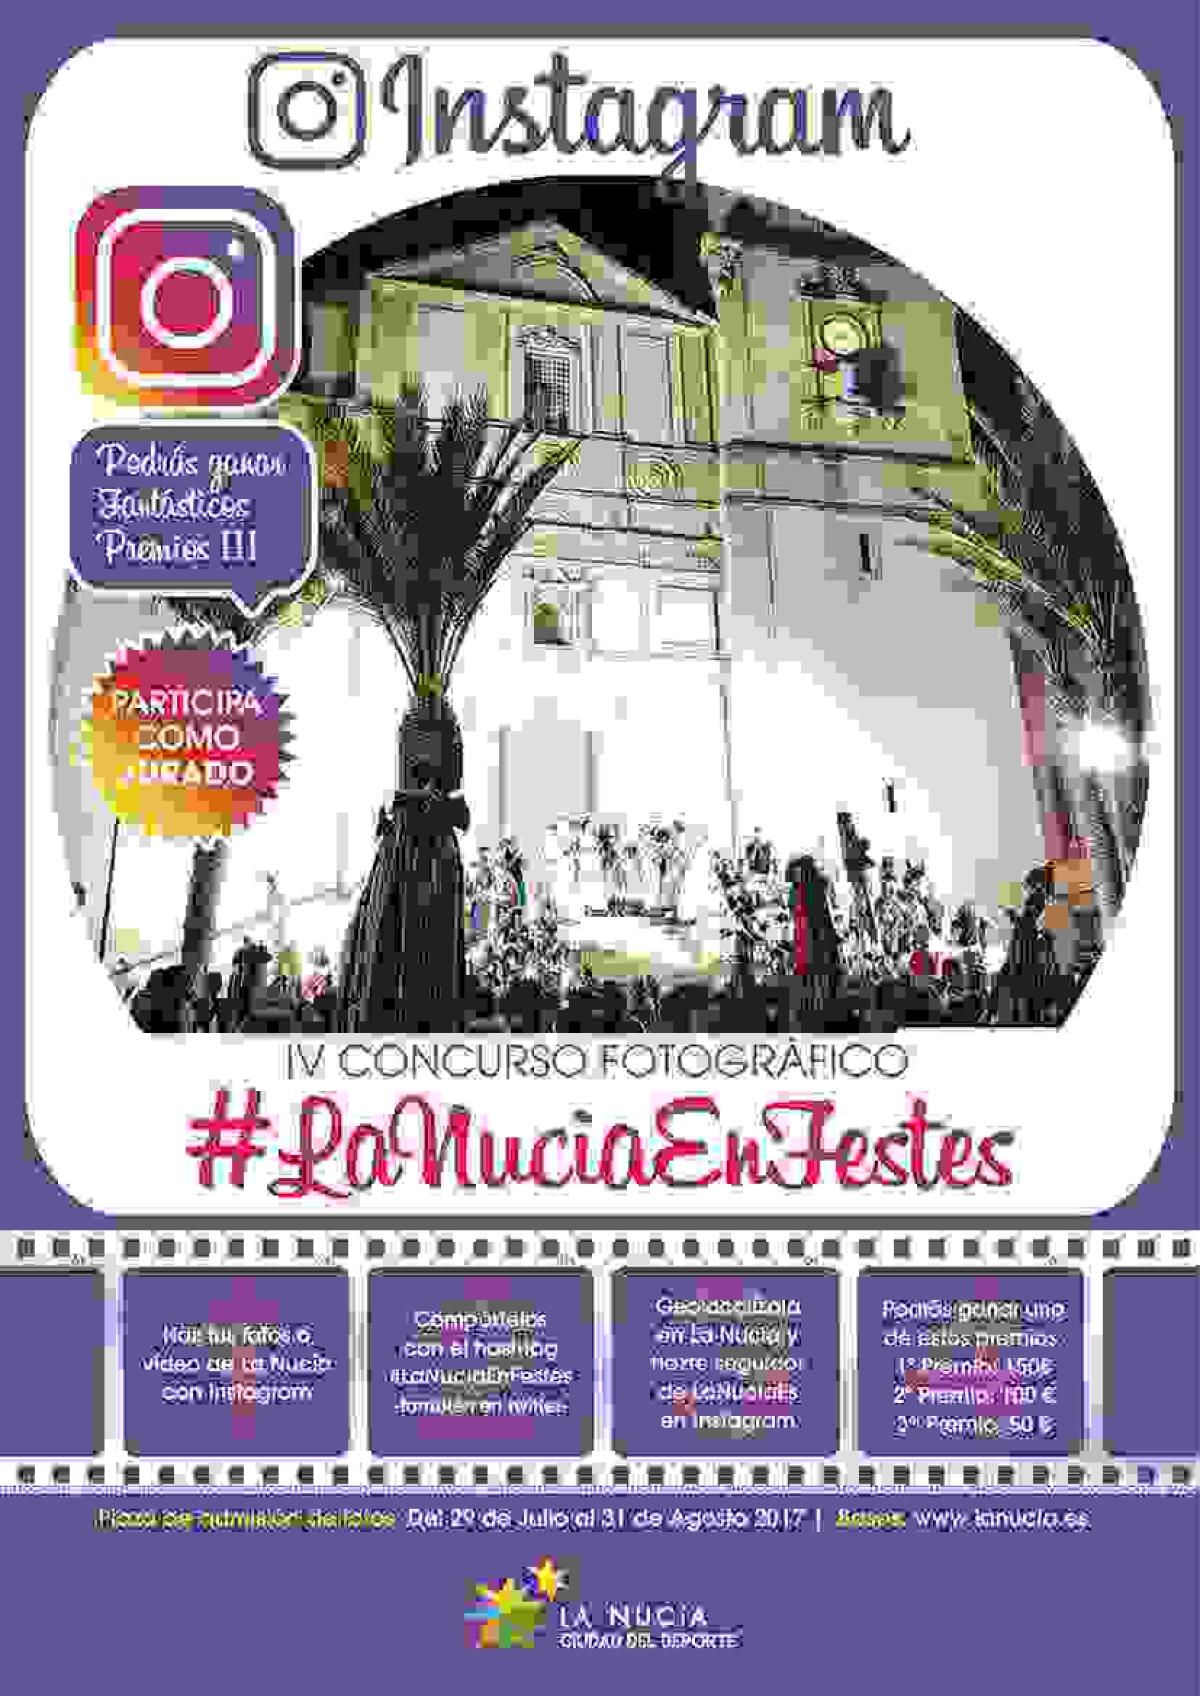 Sigue abierto el plazo para participar en el IV Concurso Fotográfico de Instagram #LaNuciaEnFestes